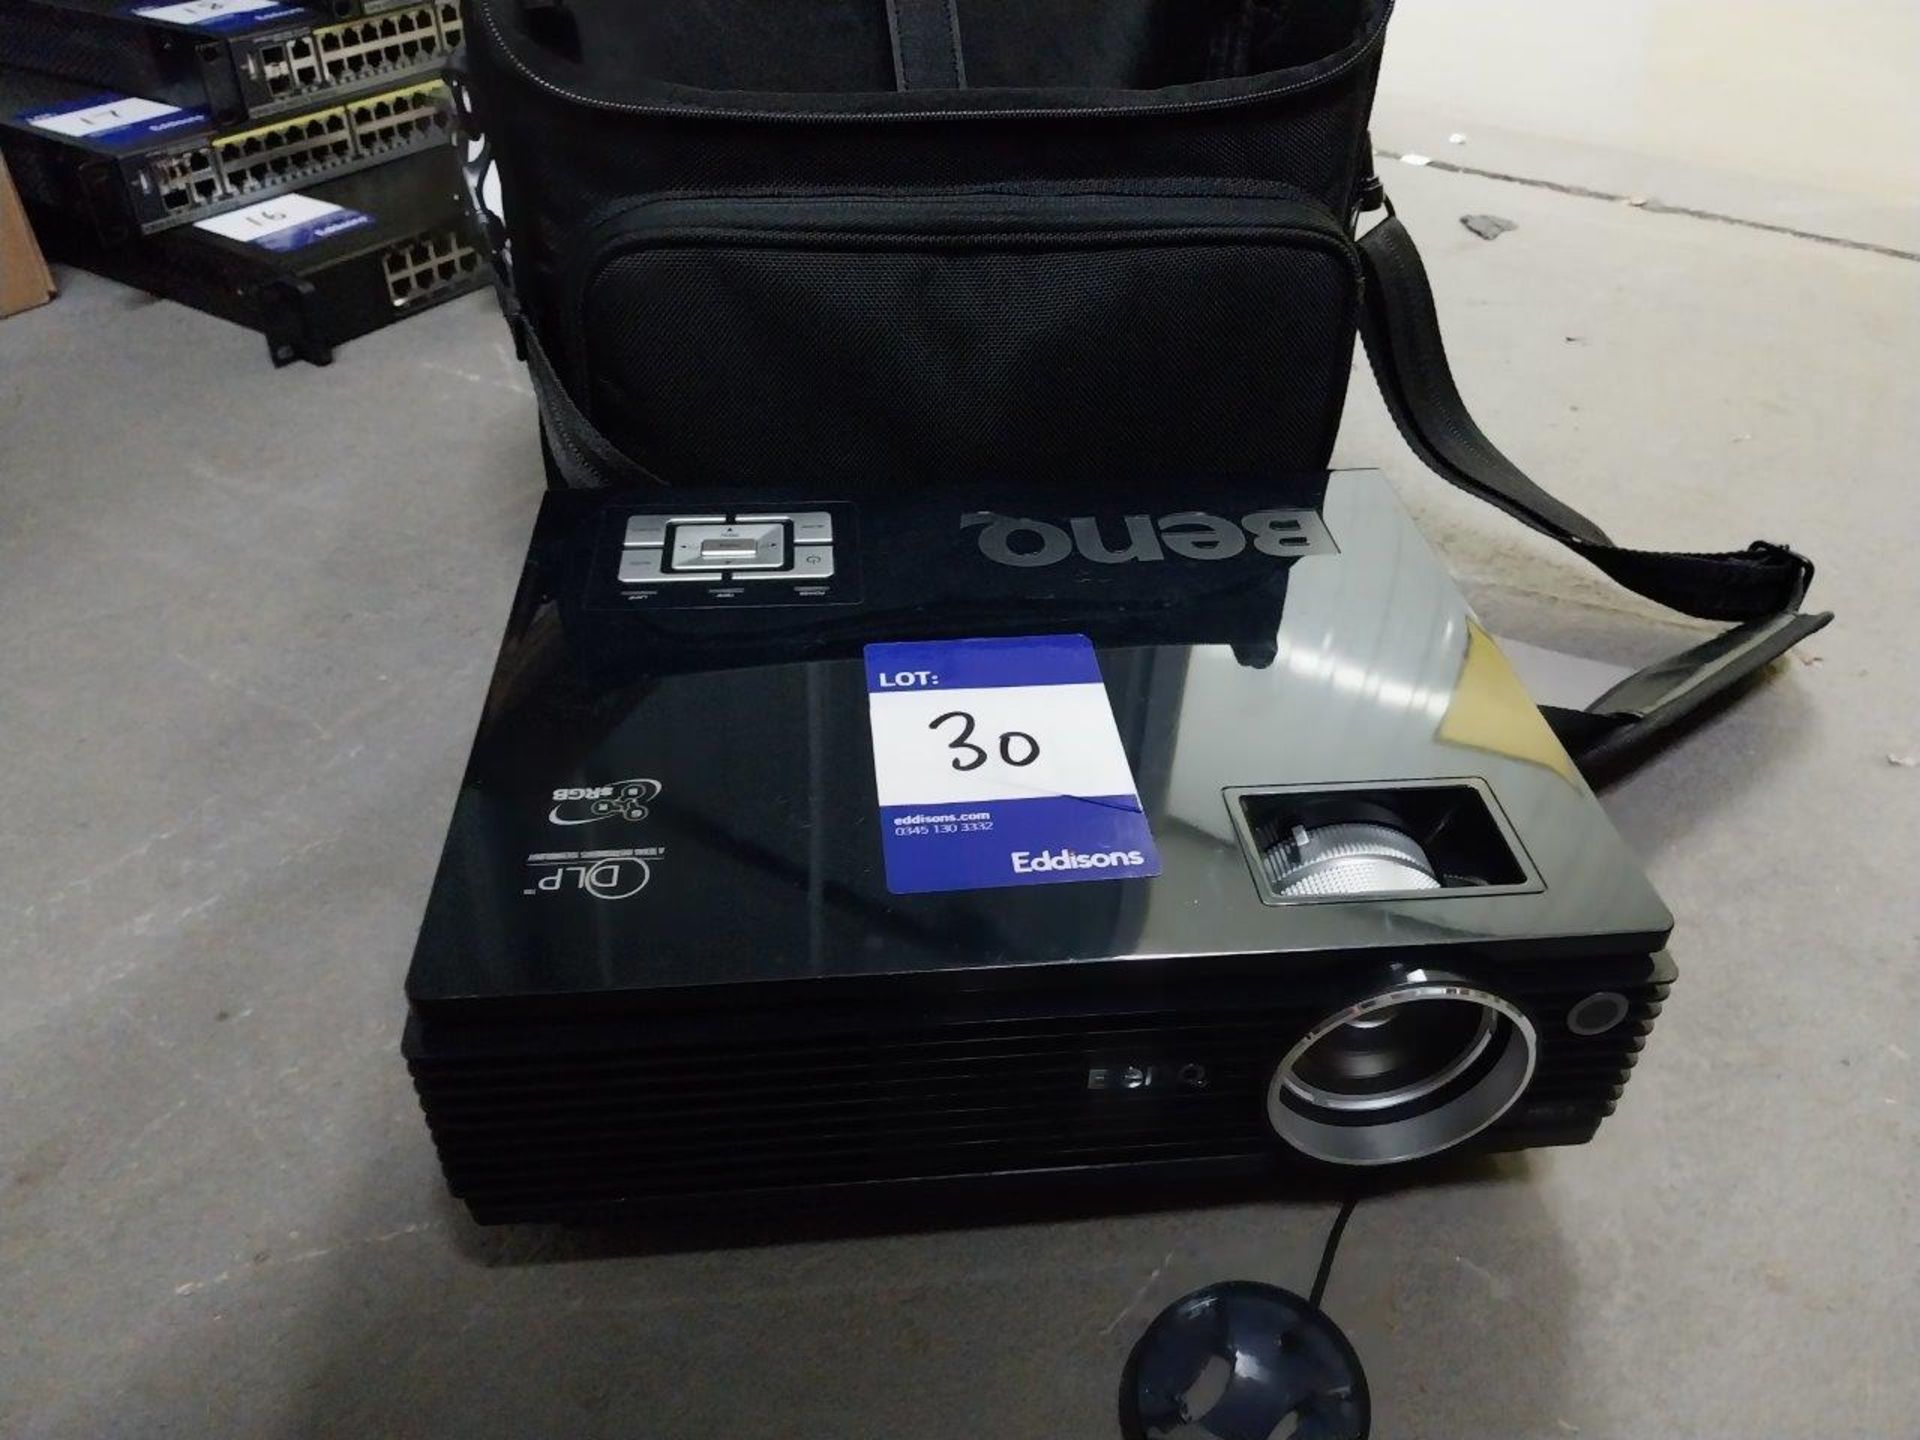 BENQ MP610 Projector